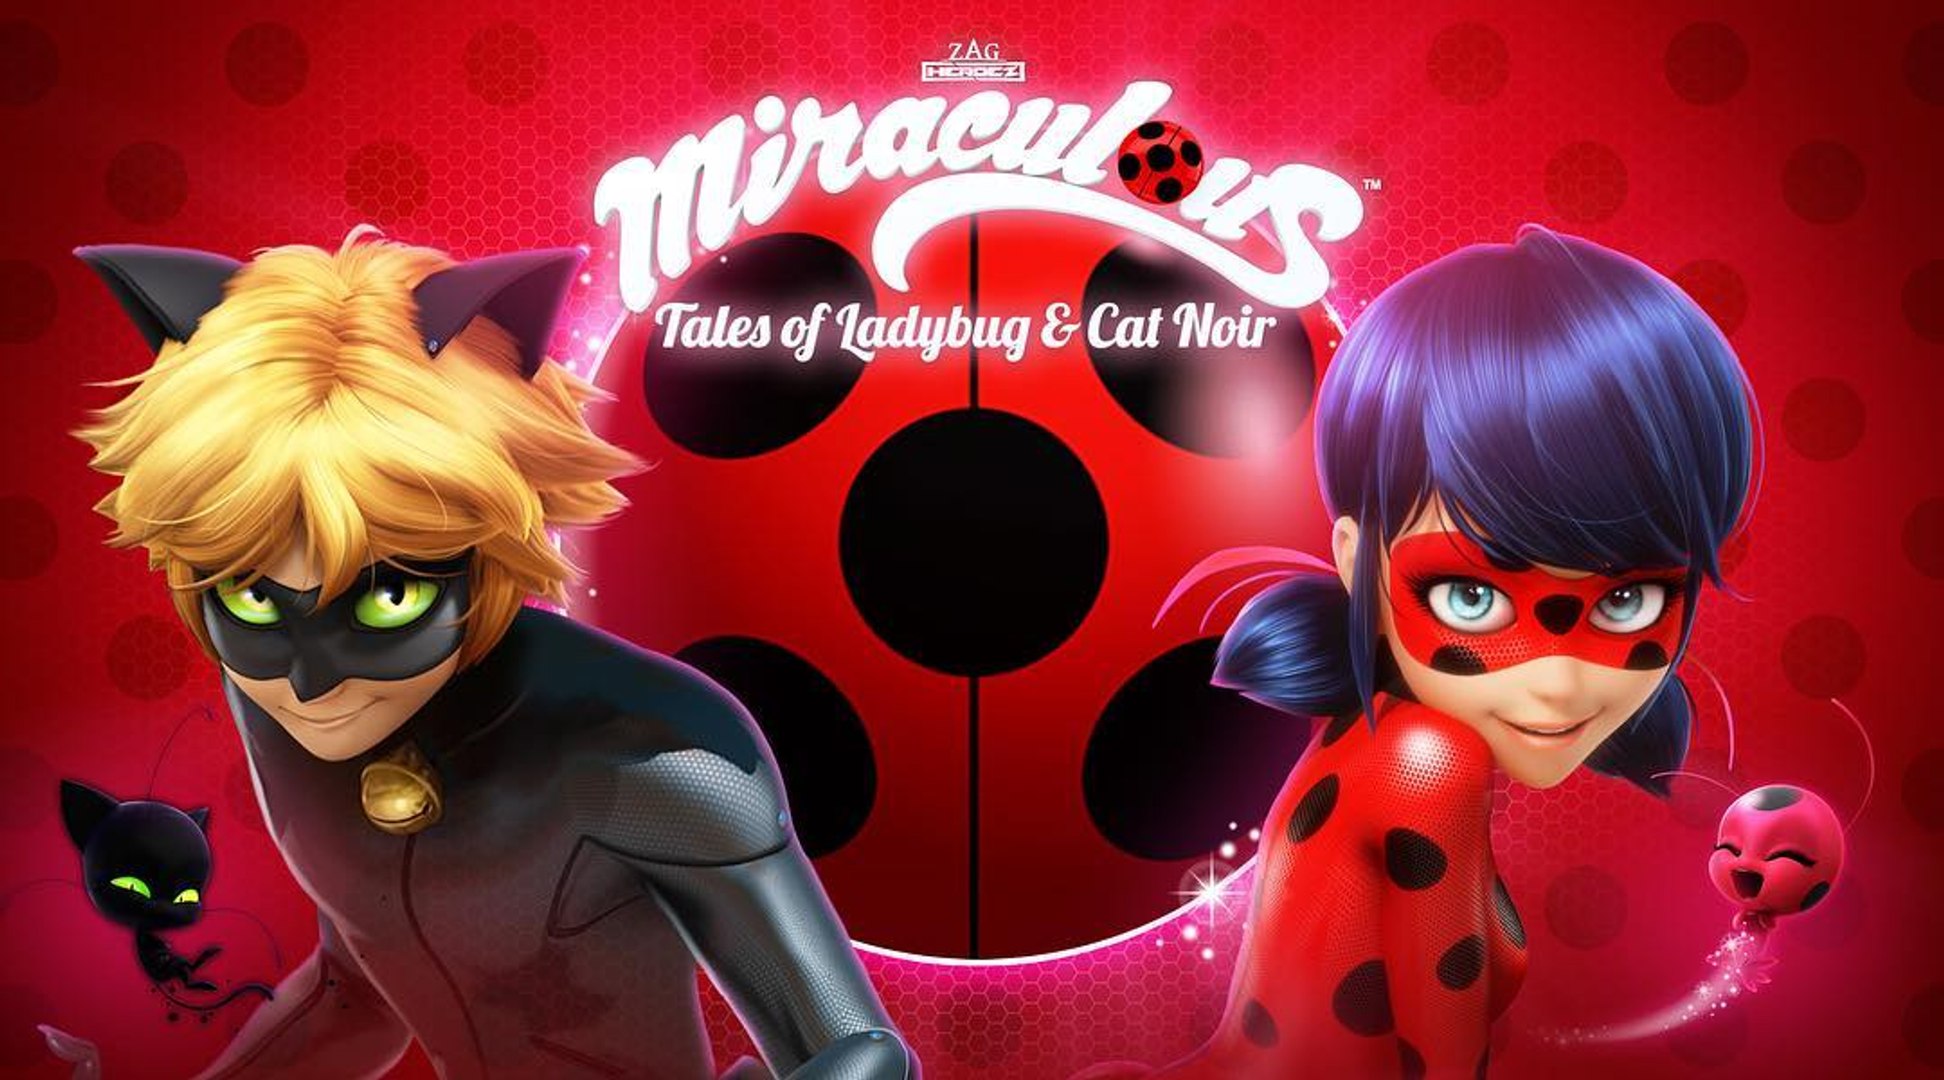 Ladybug Secret Identity Revealed - Miraculous: Ladybug and Cat Noir Dress  Up - video Dailymotion